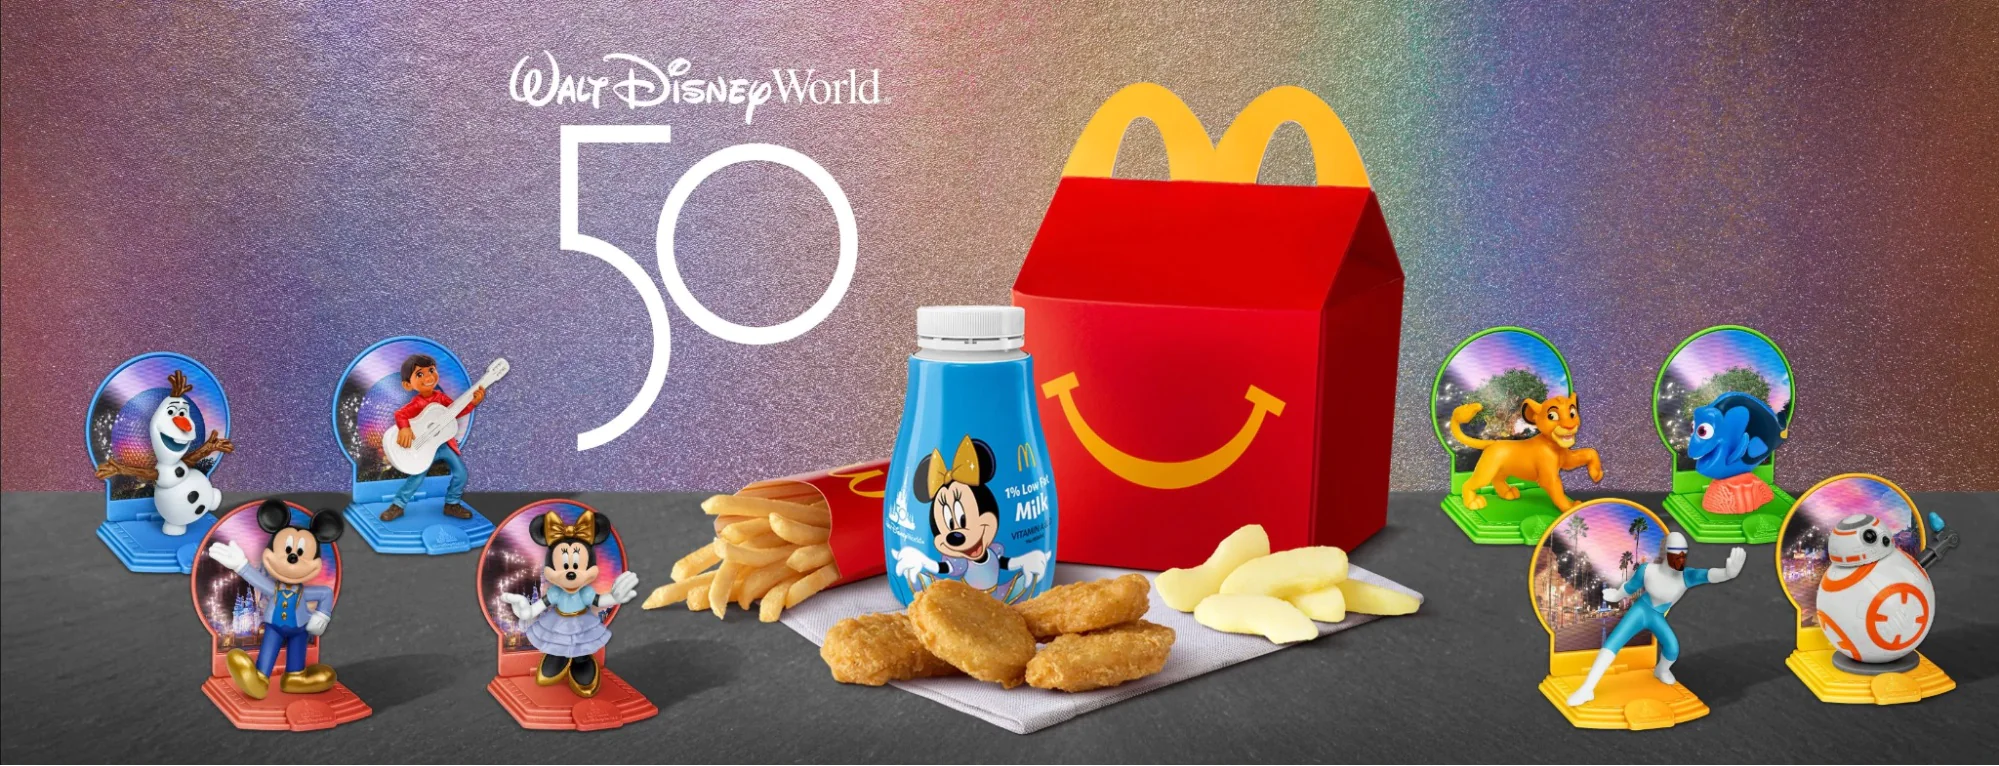 Walt Disney nhượng quyền sử dụng hình ảnh chú chuột Mickey cho McDonald's